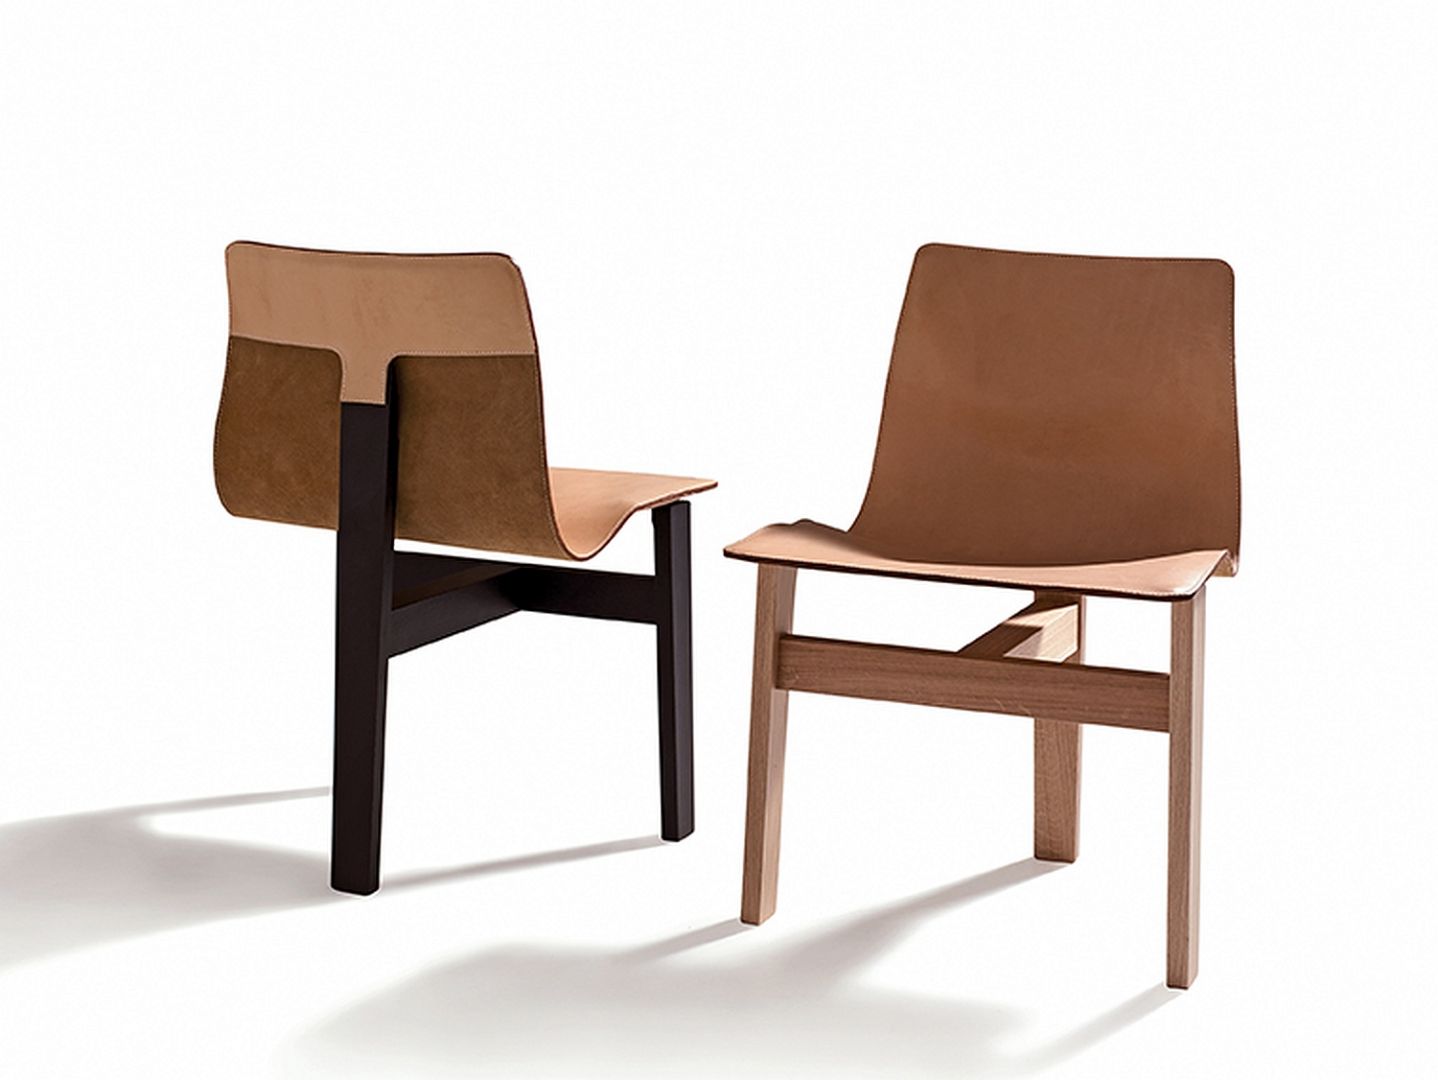 Komfortowe krzesło wykonane zostało z tradycyjnych materiałów, takich jak drewno i skóra. Charakterystyczne dla projektu jest falująca linia oparcia, która łagodnie przechodzi w siedzisko. Górną cześć podtrzymuje podstawa w kształcie litery T, na którą składają się trzy nogi. Fot. Agape